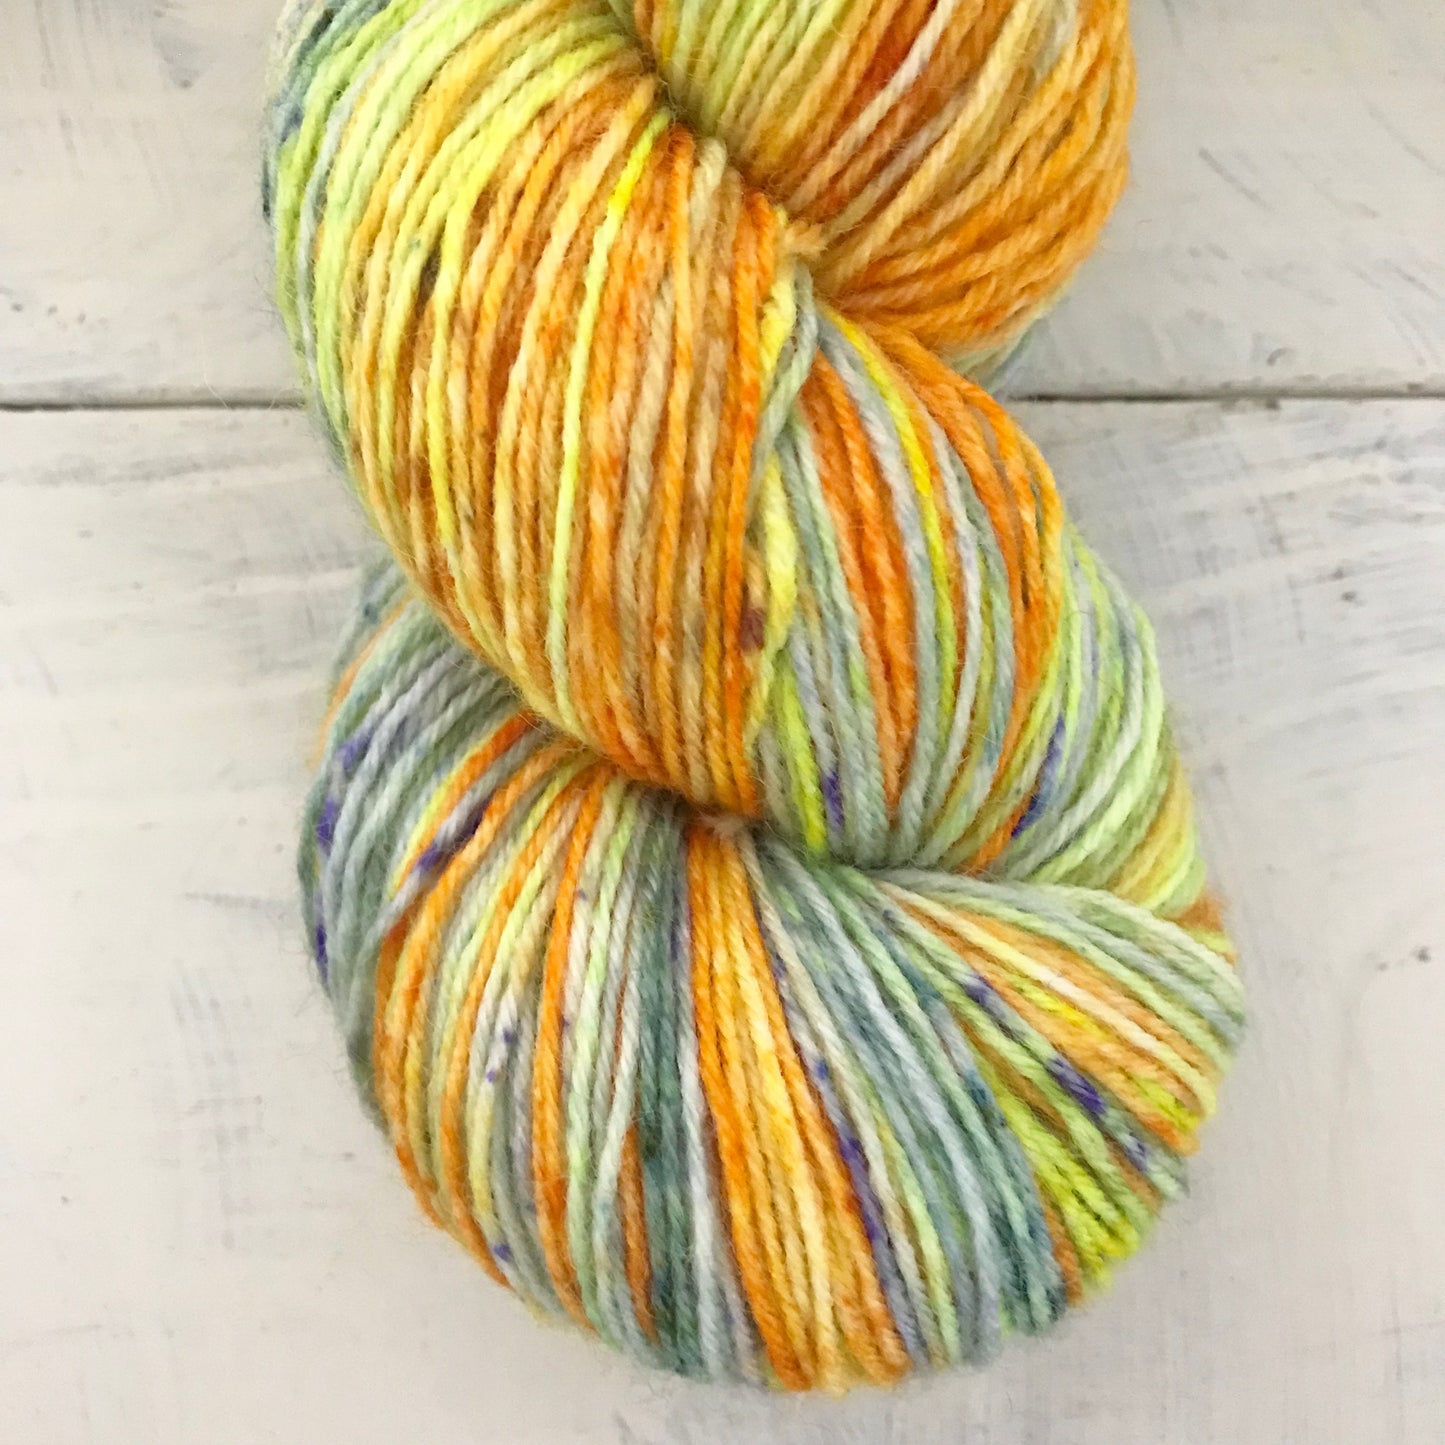 Hand-dyed yarn No.89 sock yarn "Morgenlied"